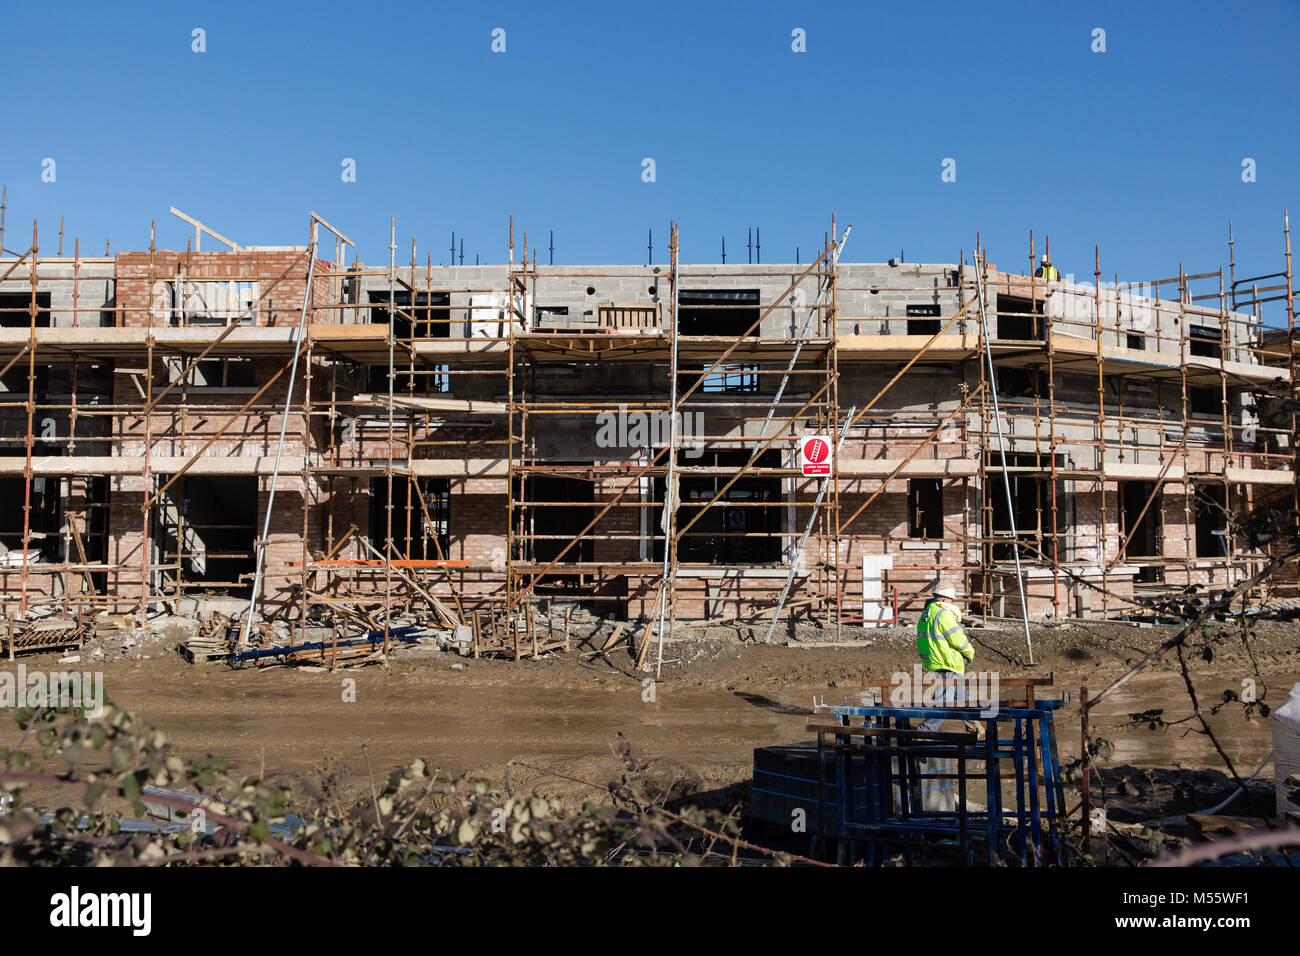 Maynooth, Condado de Kildare, Irlanda. 20 Feb 2018: Irlanda luchas del sector vivienda para satisfacer la demanda como todavía no suficiente se están construyendo nuevas viviendas. Sitio de construcción en Maynooth. Foto de stock